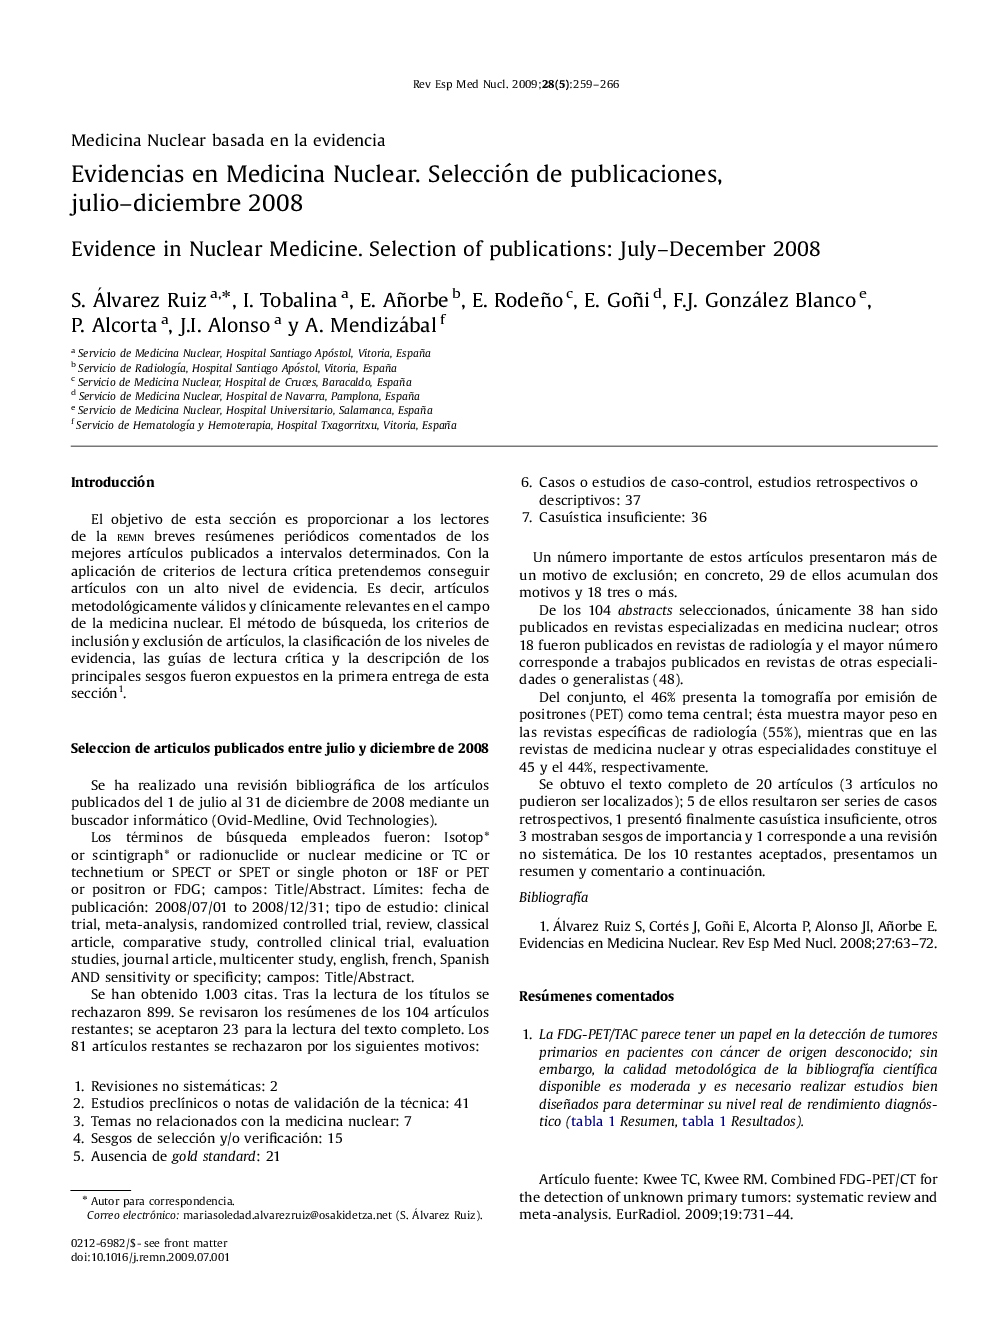 Evidencias en Medicina Nuclear. Seleccion de publicaciones, julio-diciembre 2008